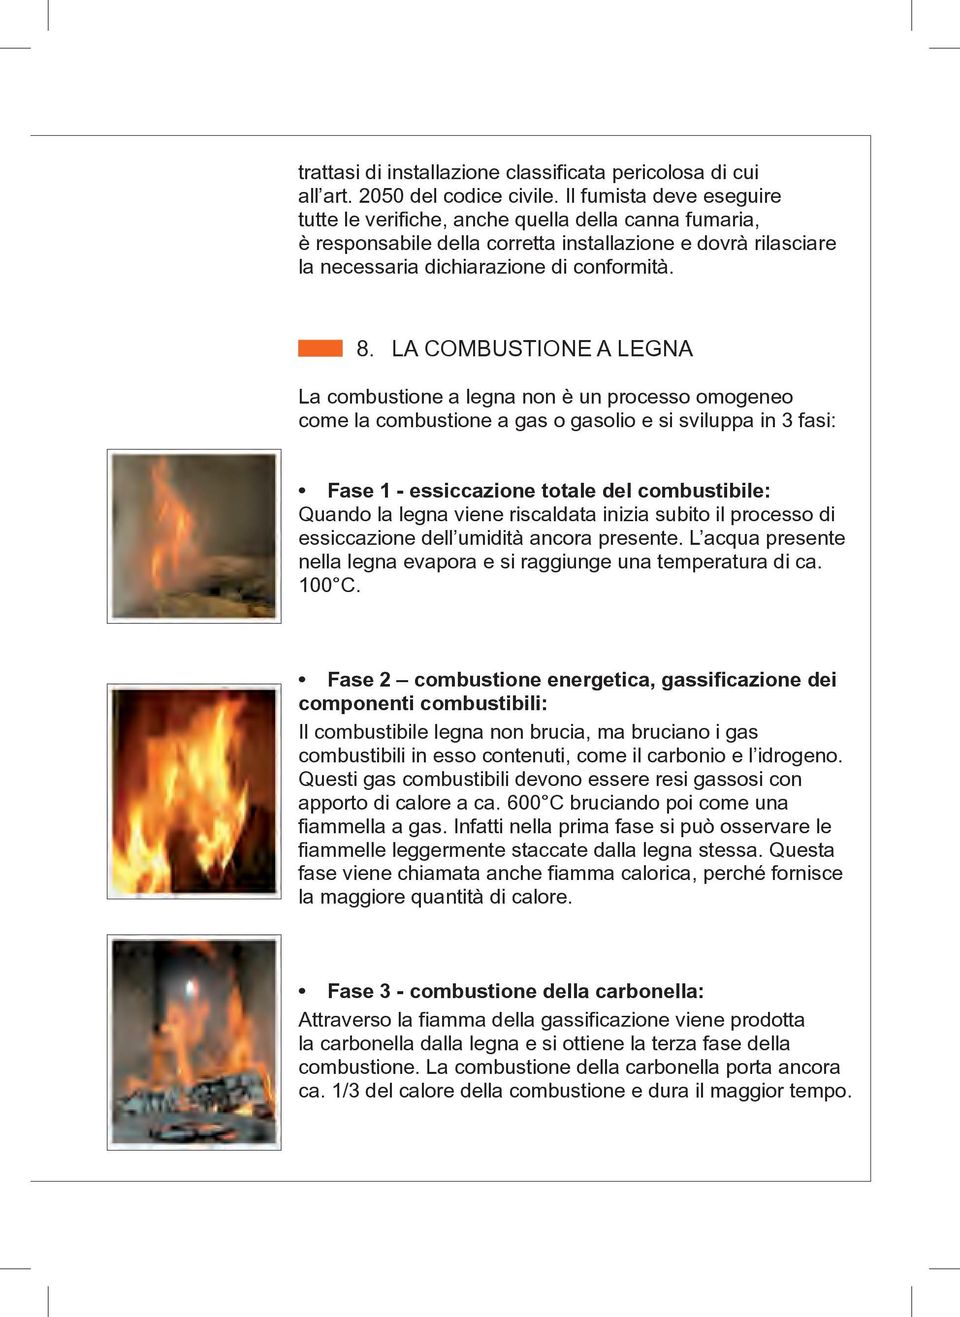 LA COMBUSTIONE A LEGNA La combustione a legna non è un processo omogeneo come la combustione a gas o gasolio e si sviluppa in 3 fasi: Fase 1 - essiccazione totale del combustibile: Quando la legna